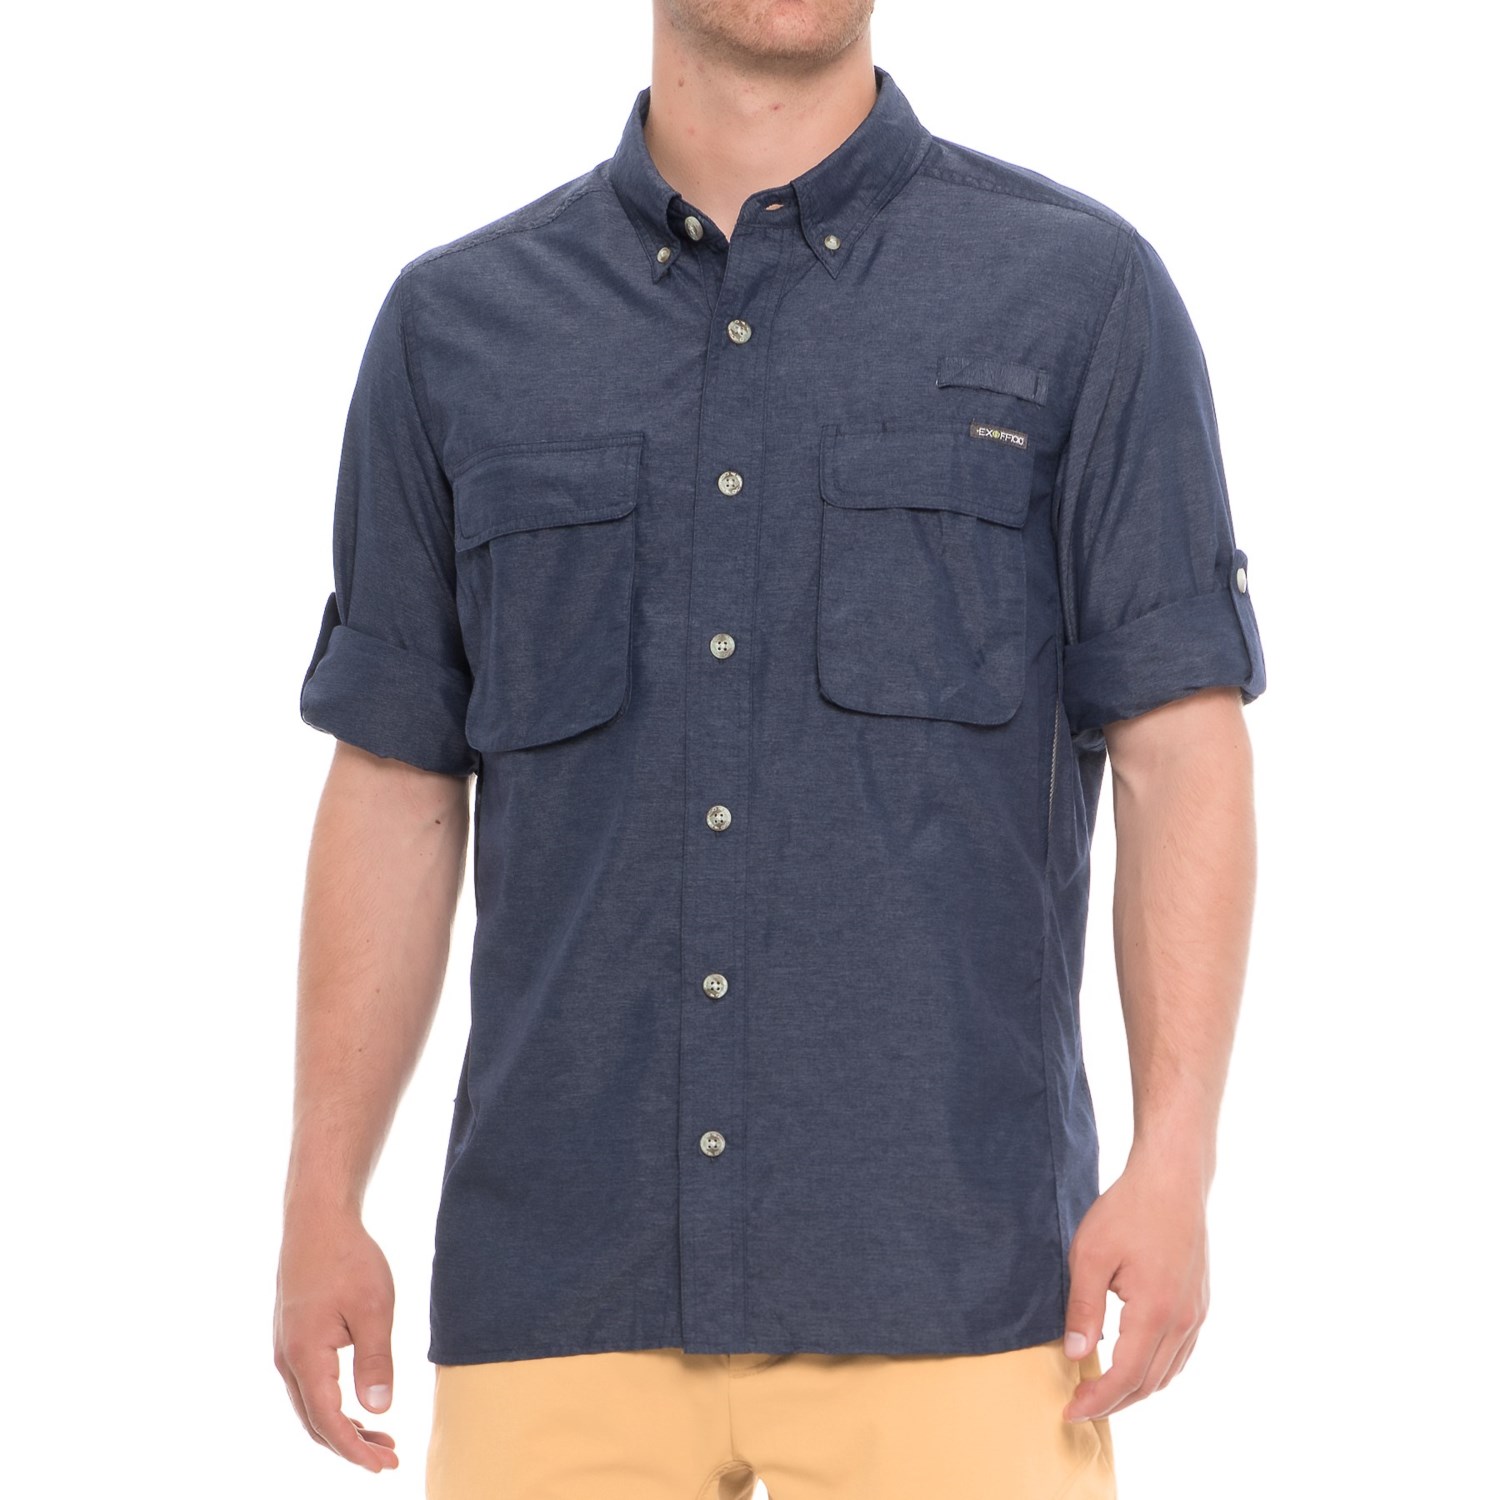 ExOfficio Air Strip Shirt (For Men) - Save 33%